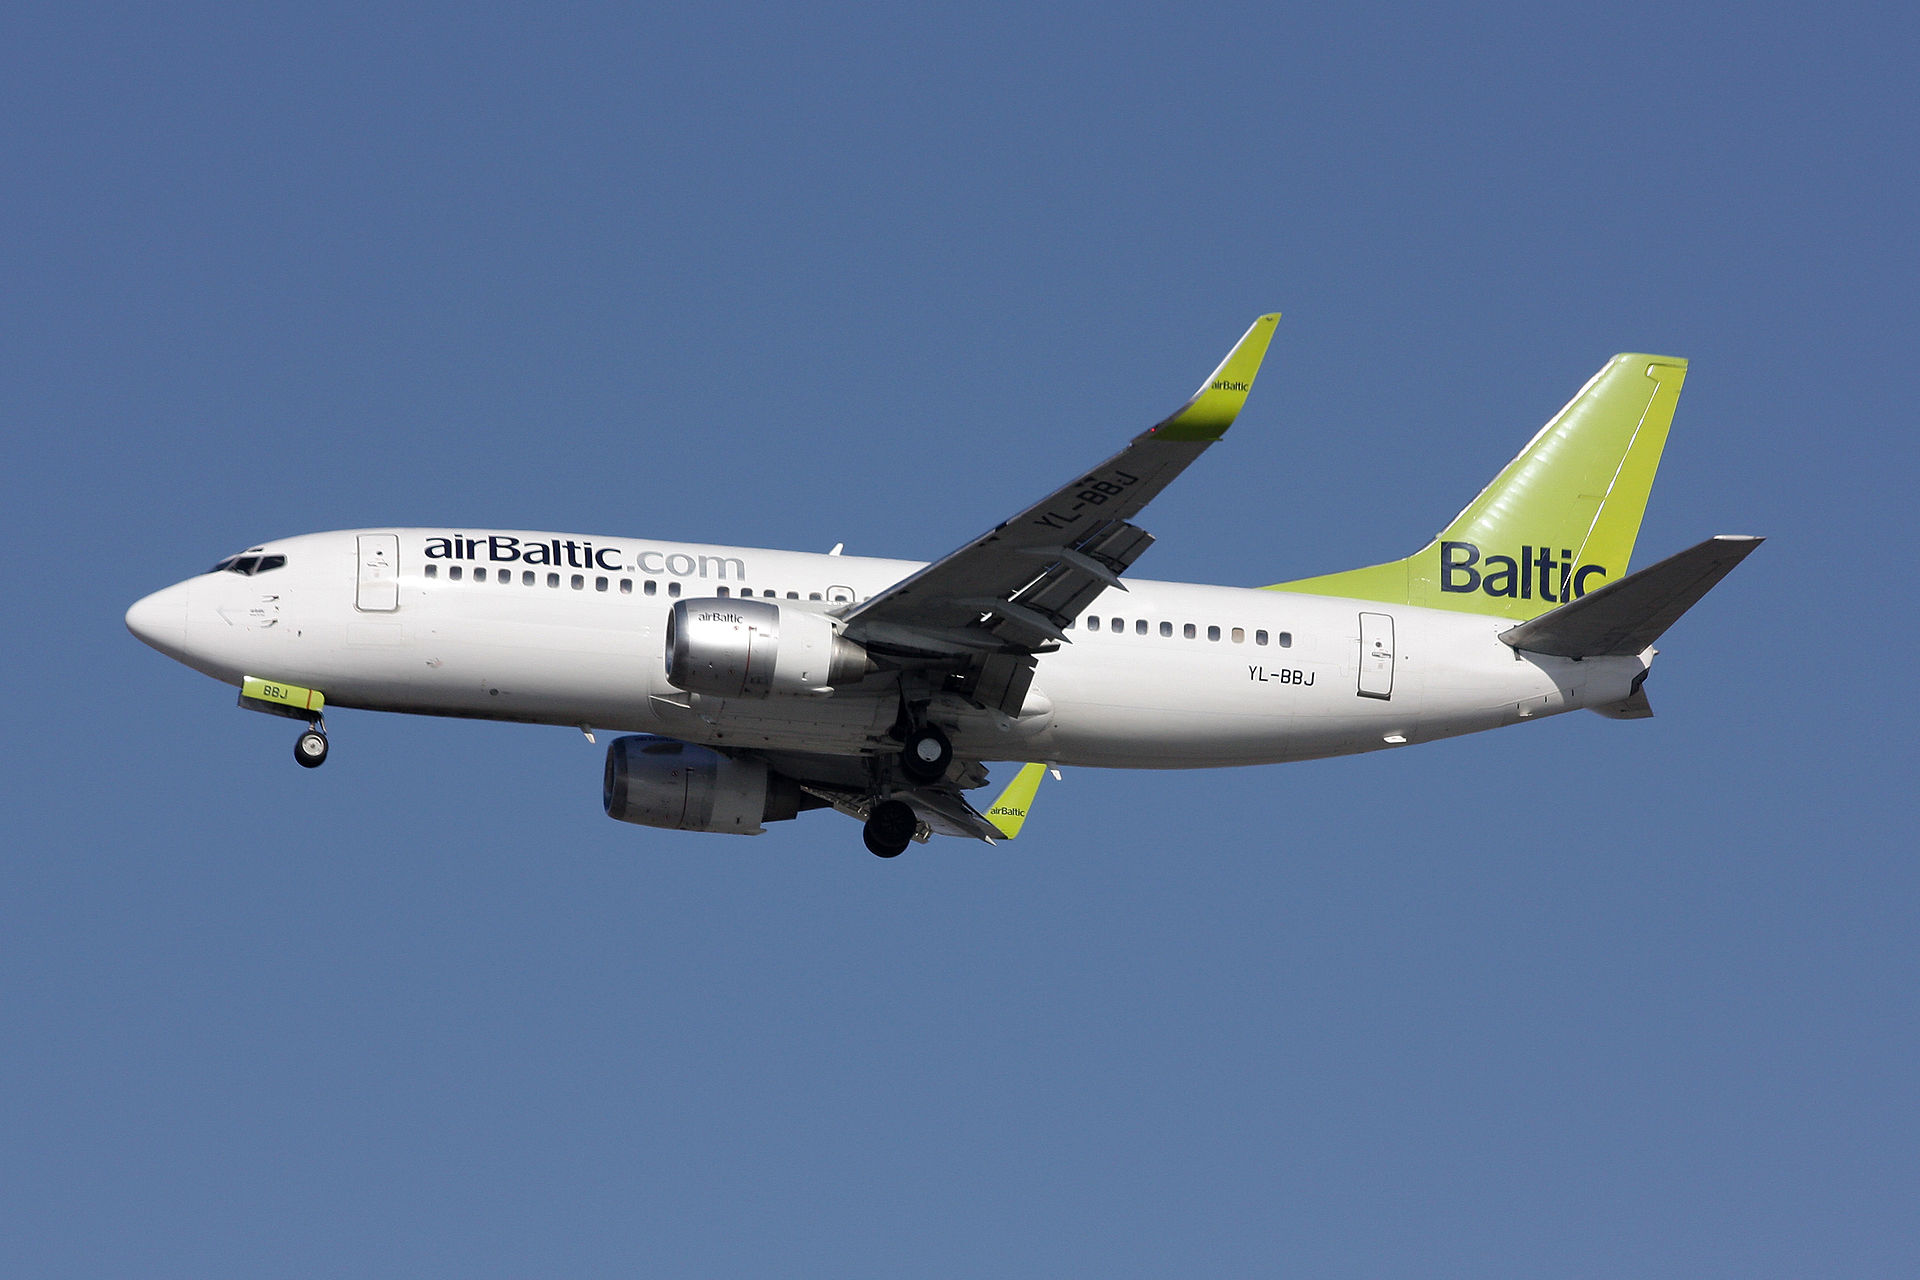 Air Baltic enregistre avec 5 jours d'avance